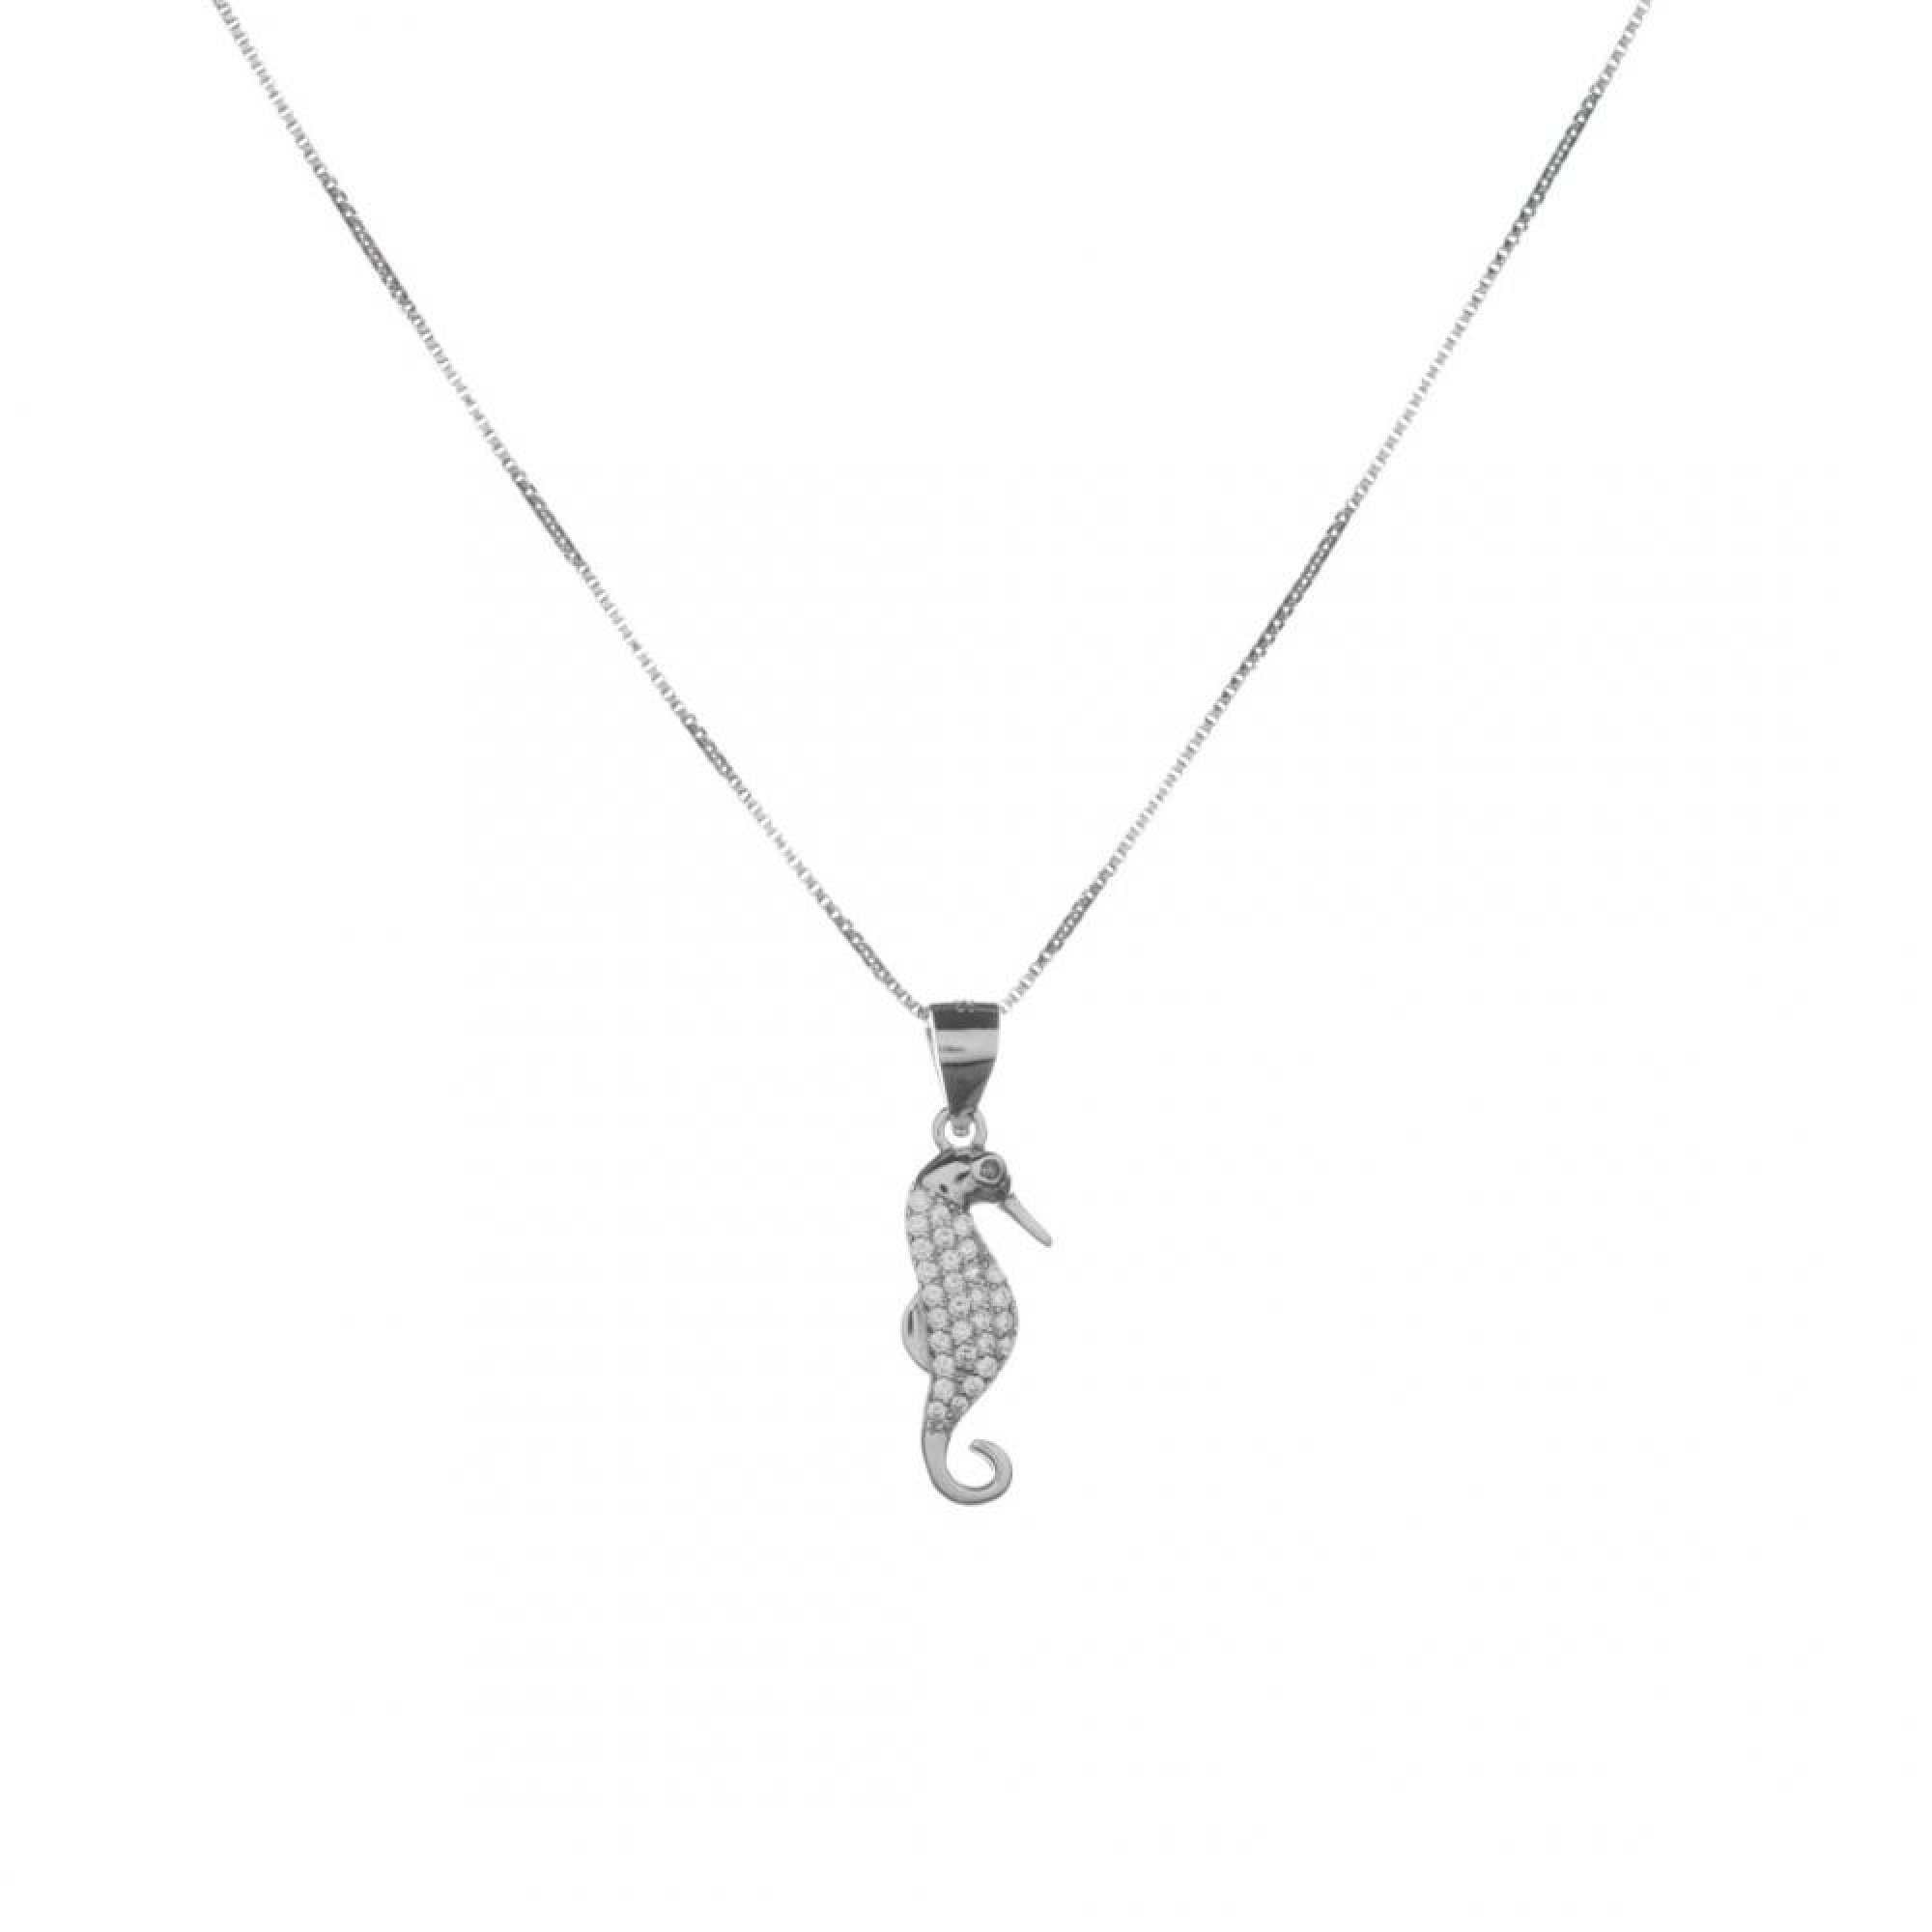 Seahorse pendant with zircon stones